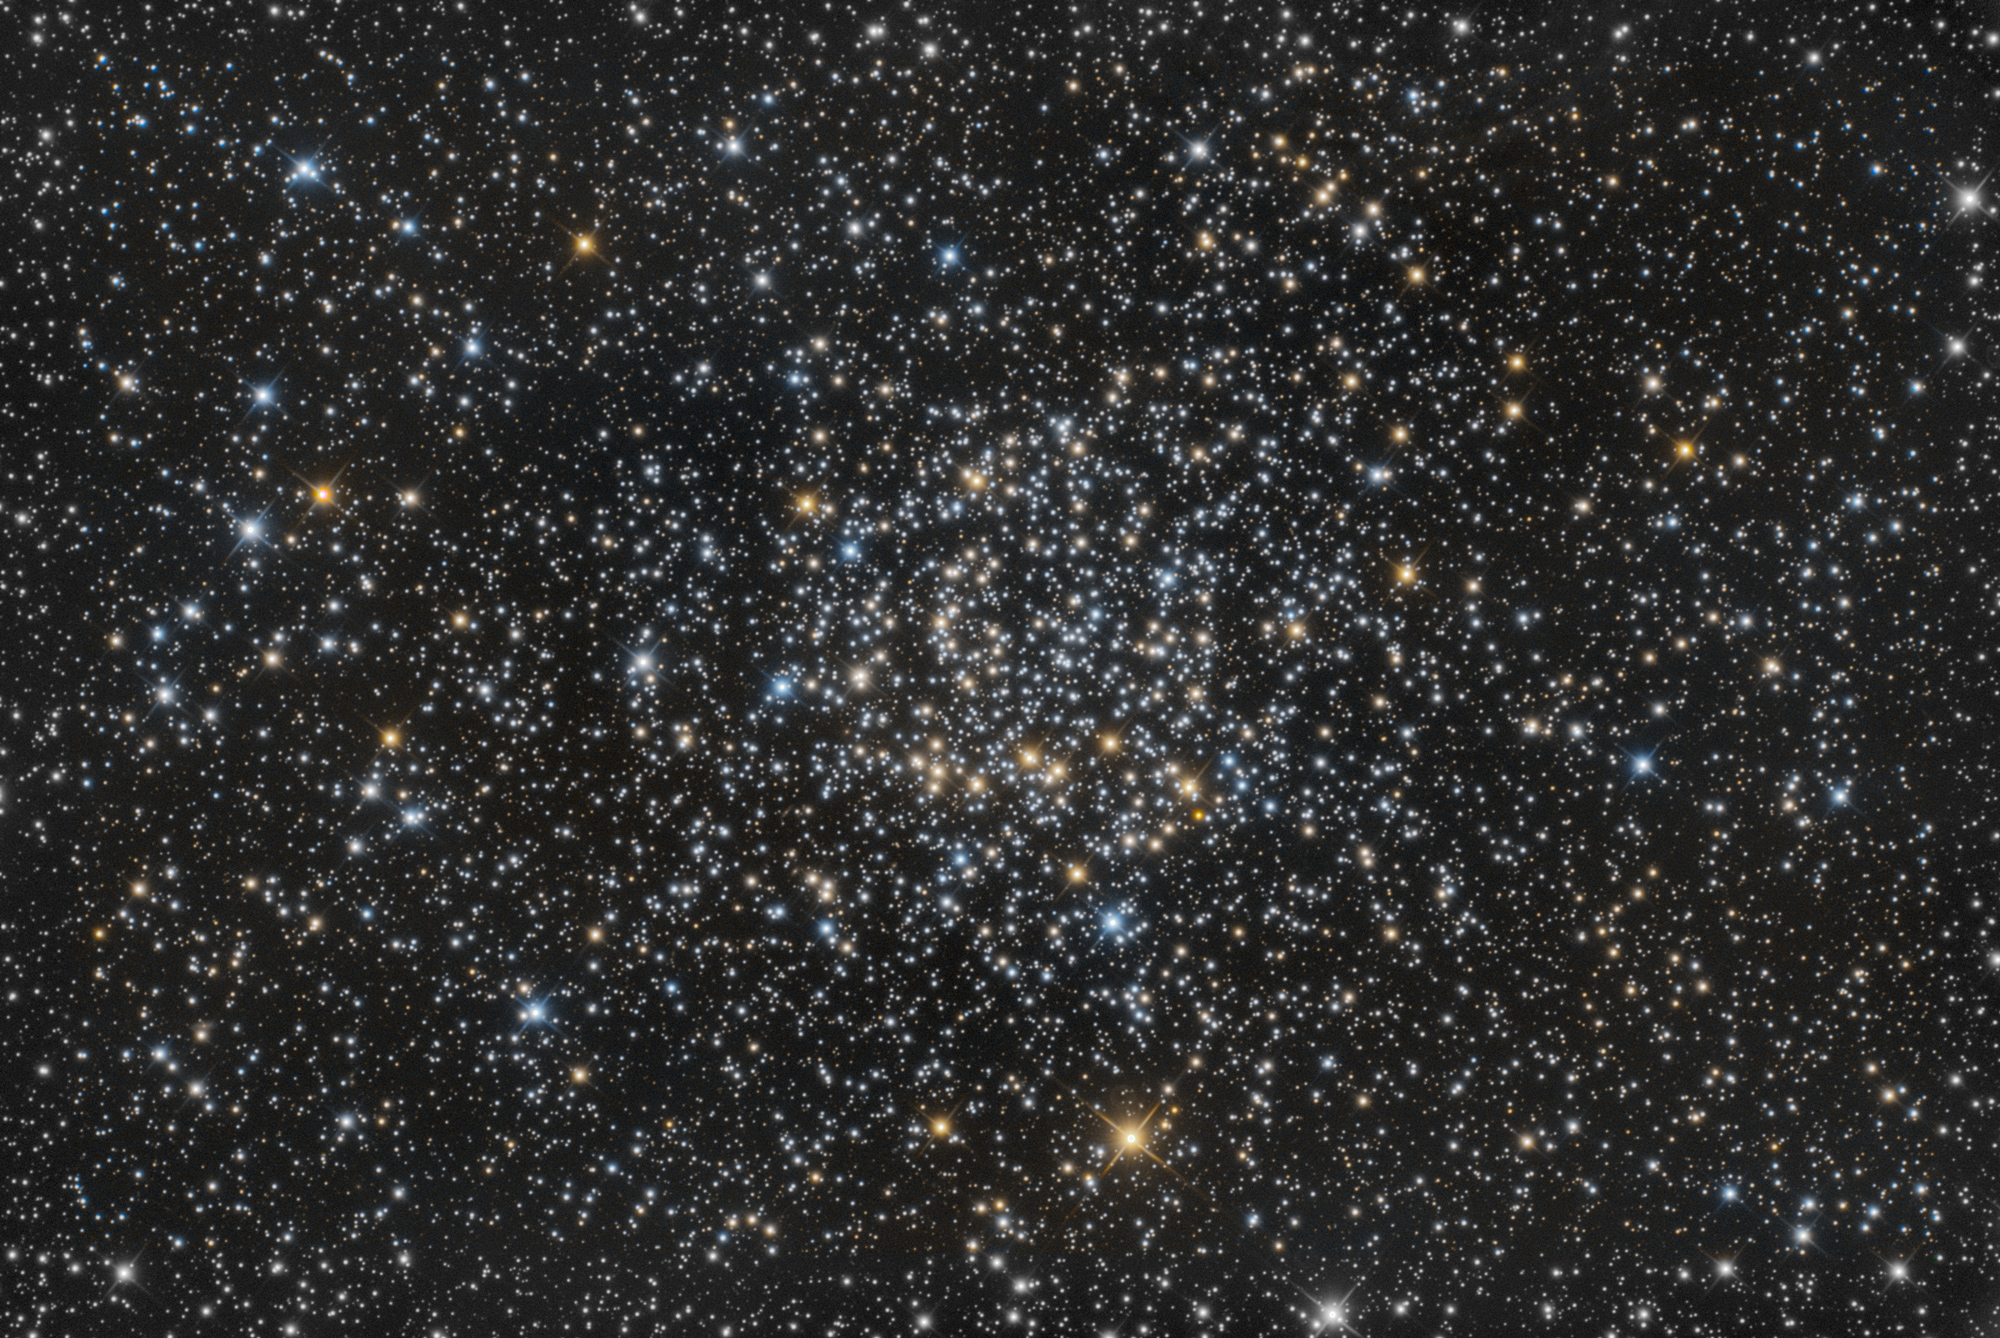 NGC7789